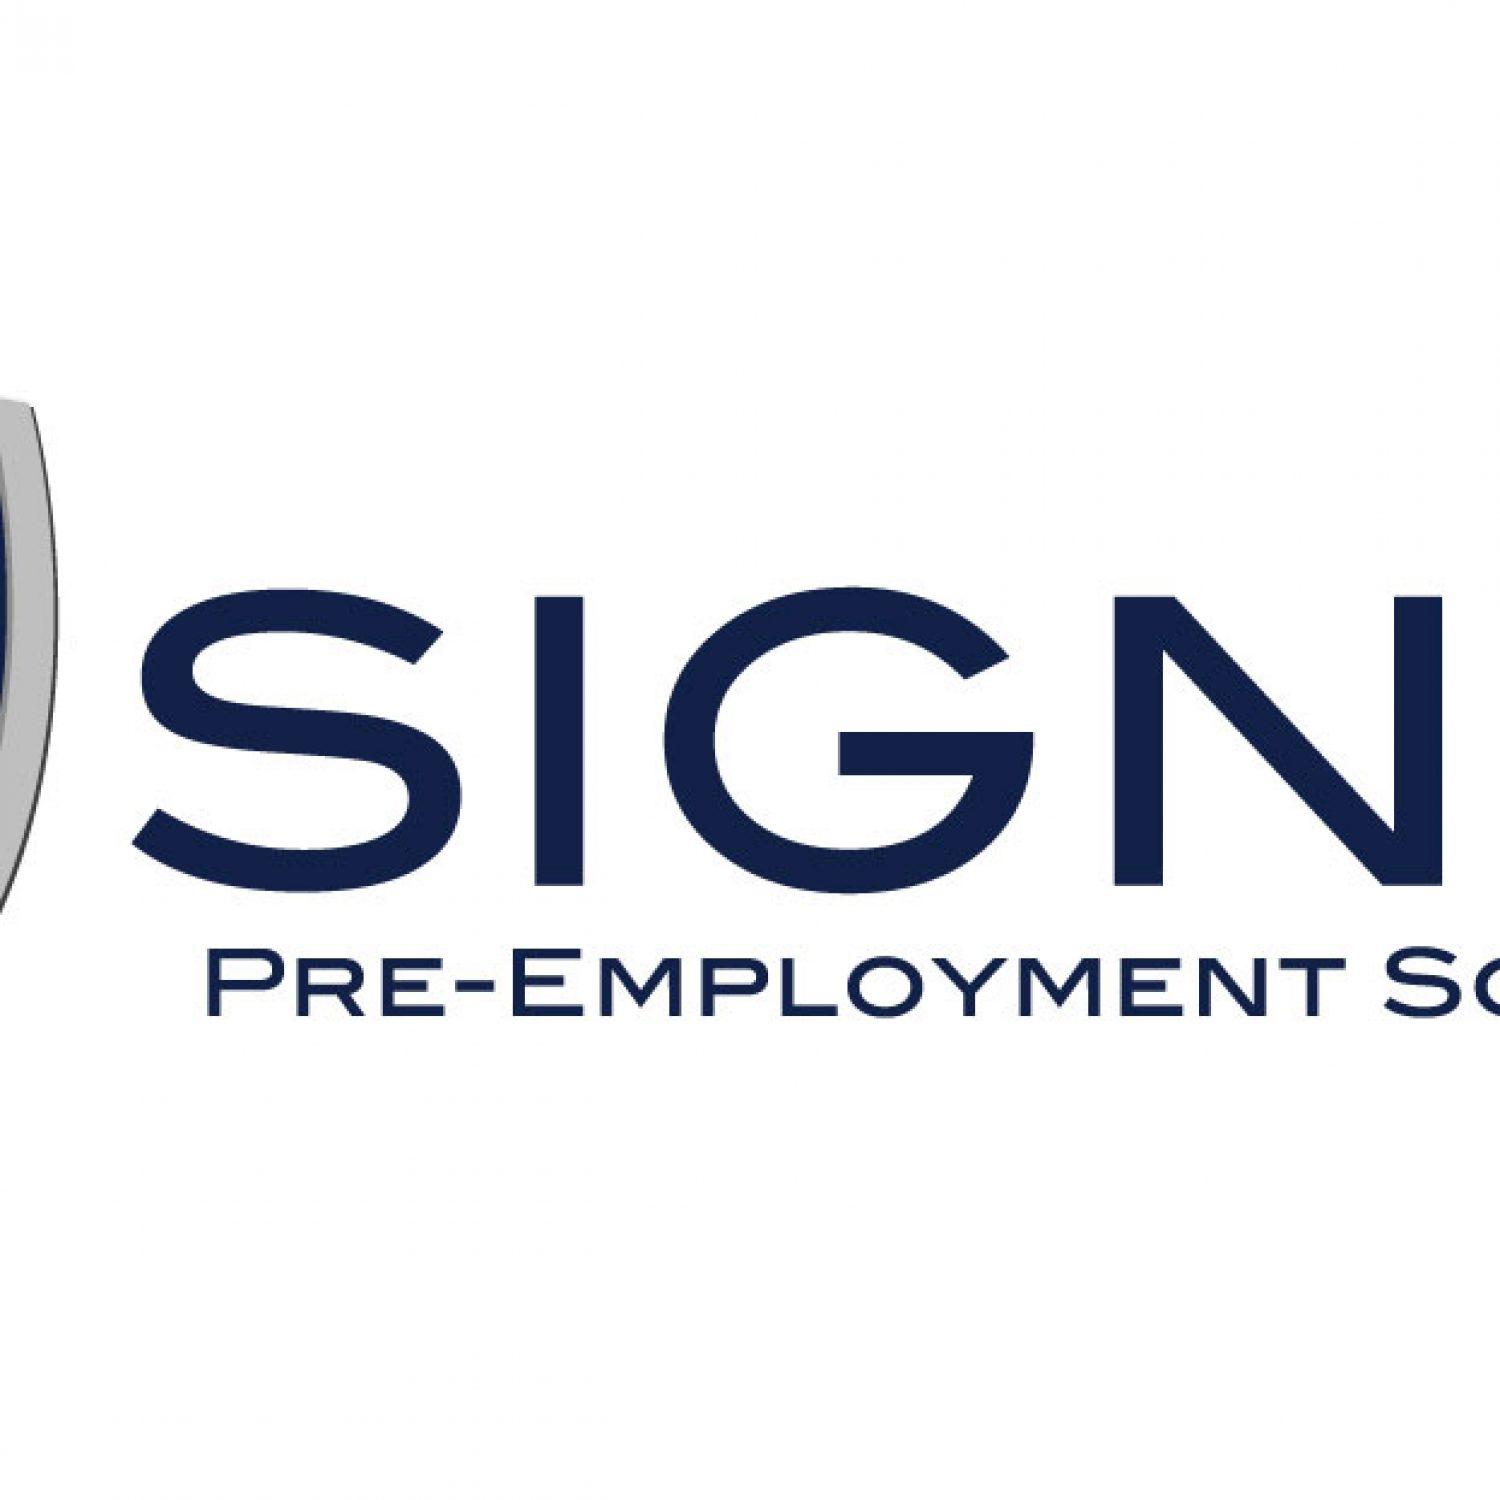 Signet Logo - Signet Logo History Behind Name 2. Signet Screening Inc